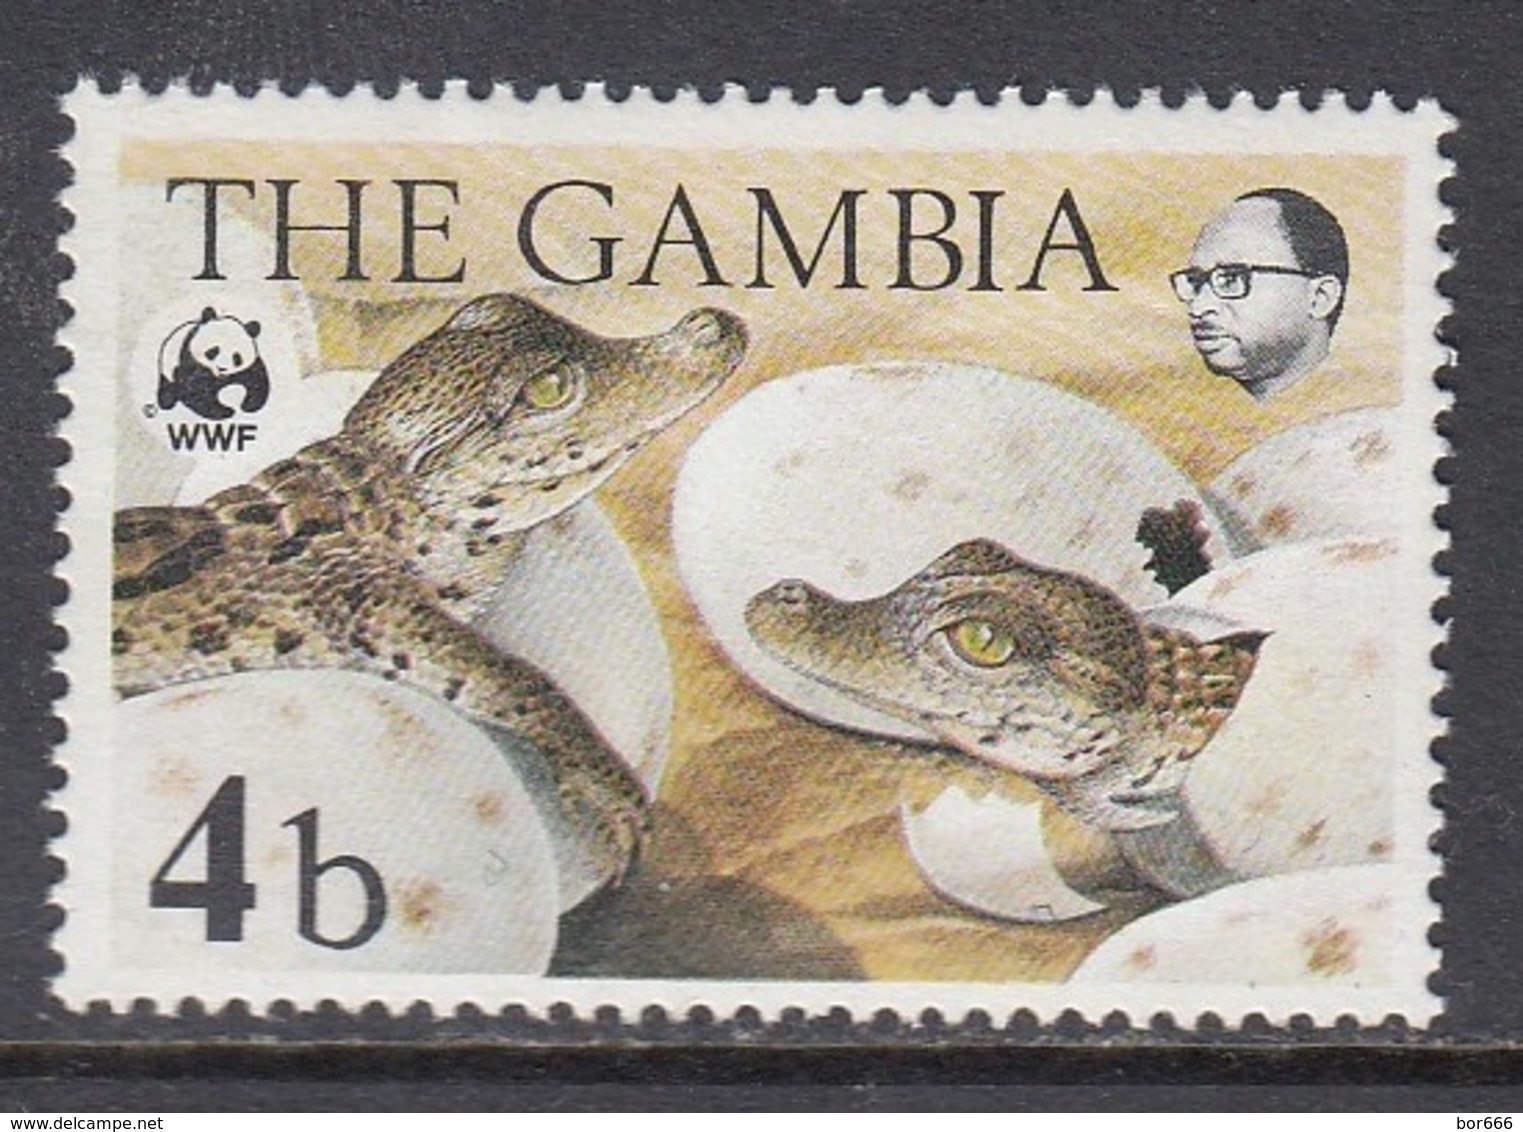 Gambia - WWF / CROCODILE 1984 MNH - Gambia (1965-...)